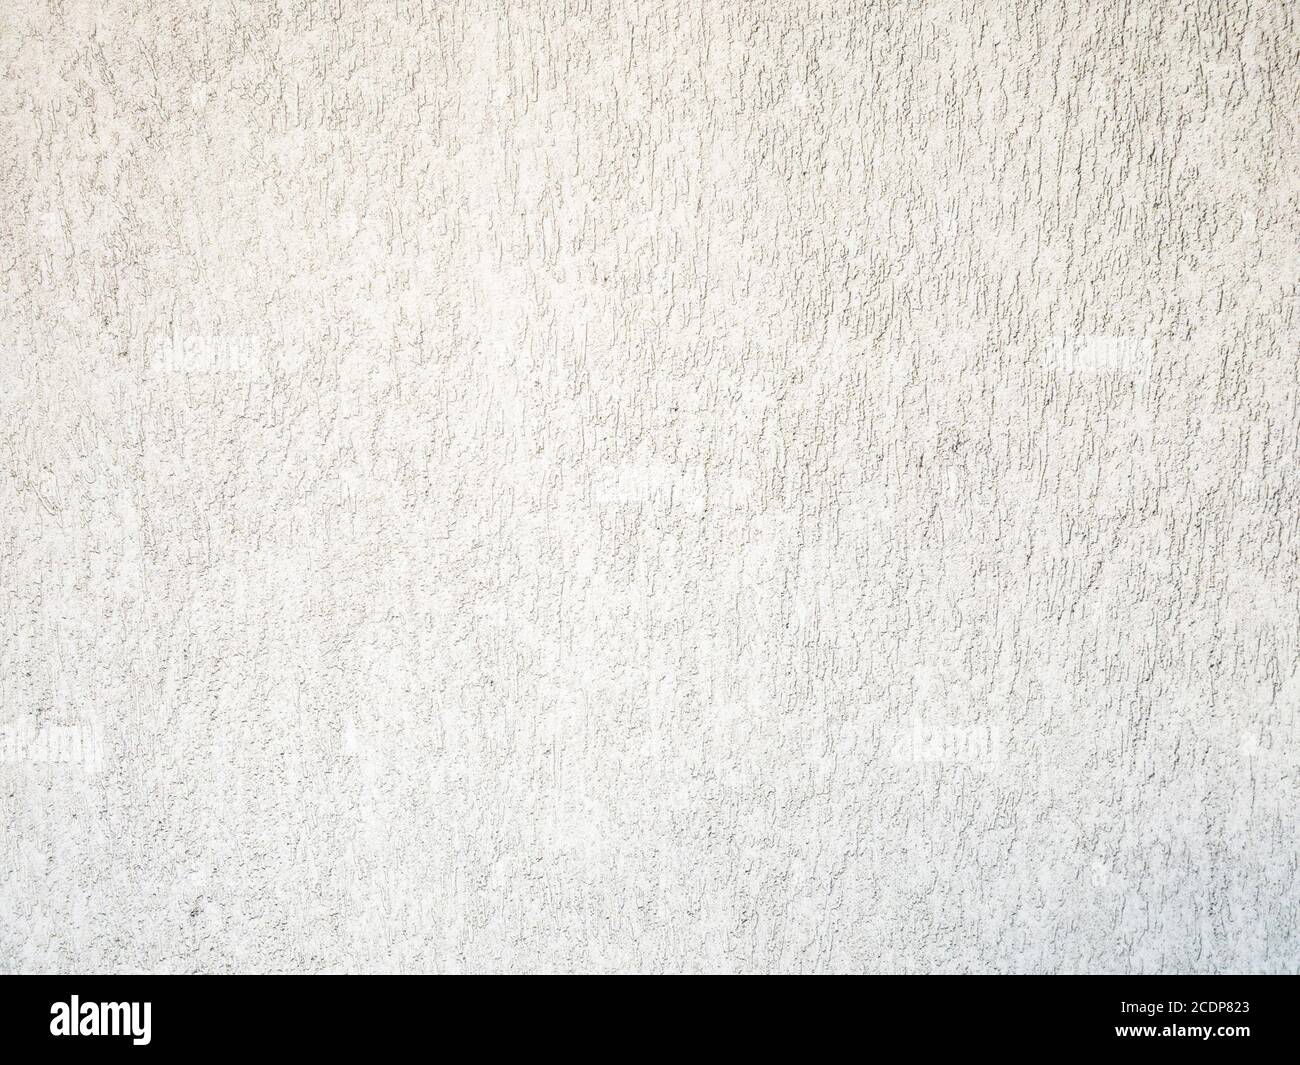 Weiße Betonwand ist eine dekorative oder strukturierte Oberfläche. Kann als Hintergrund oder für Designzwecke verwendet werden Stockfoto